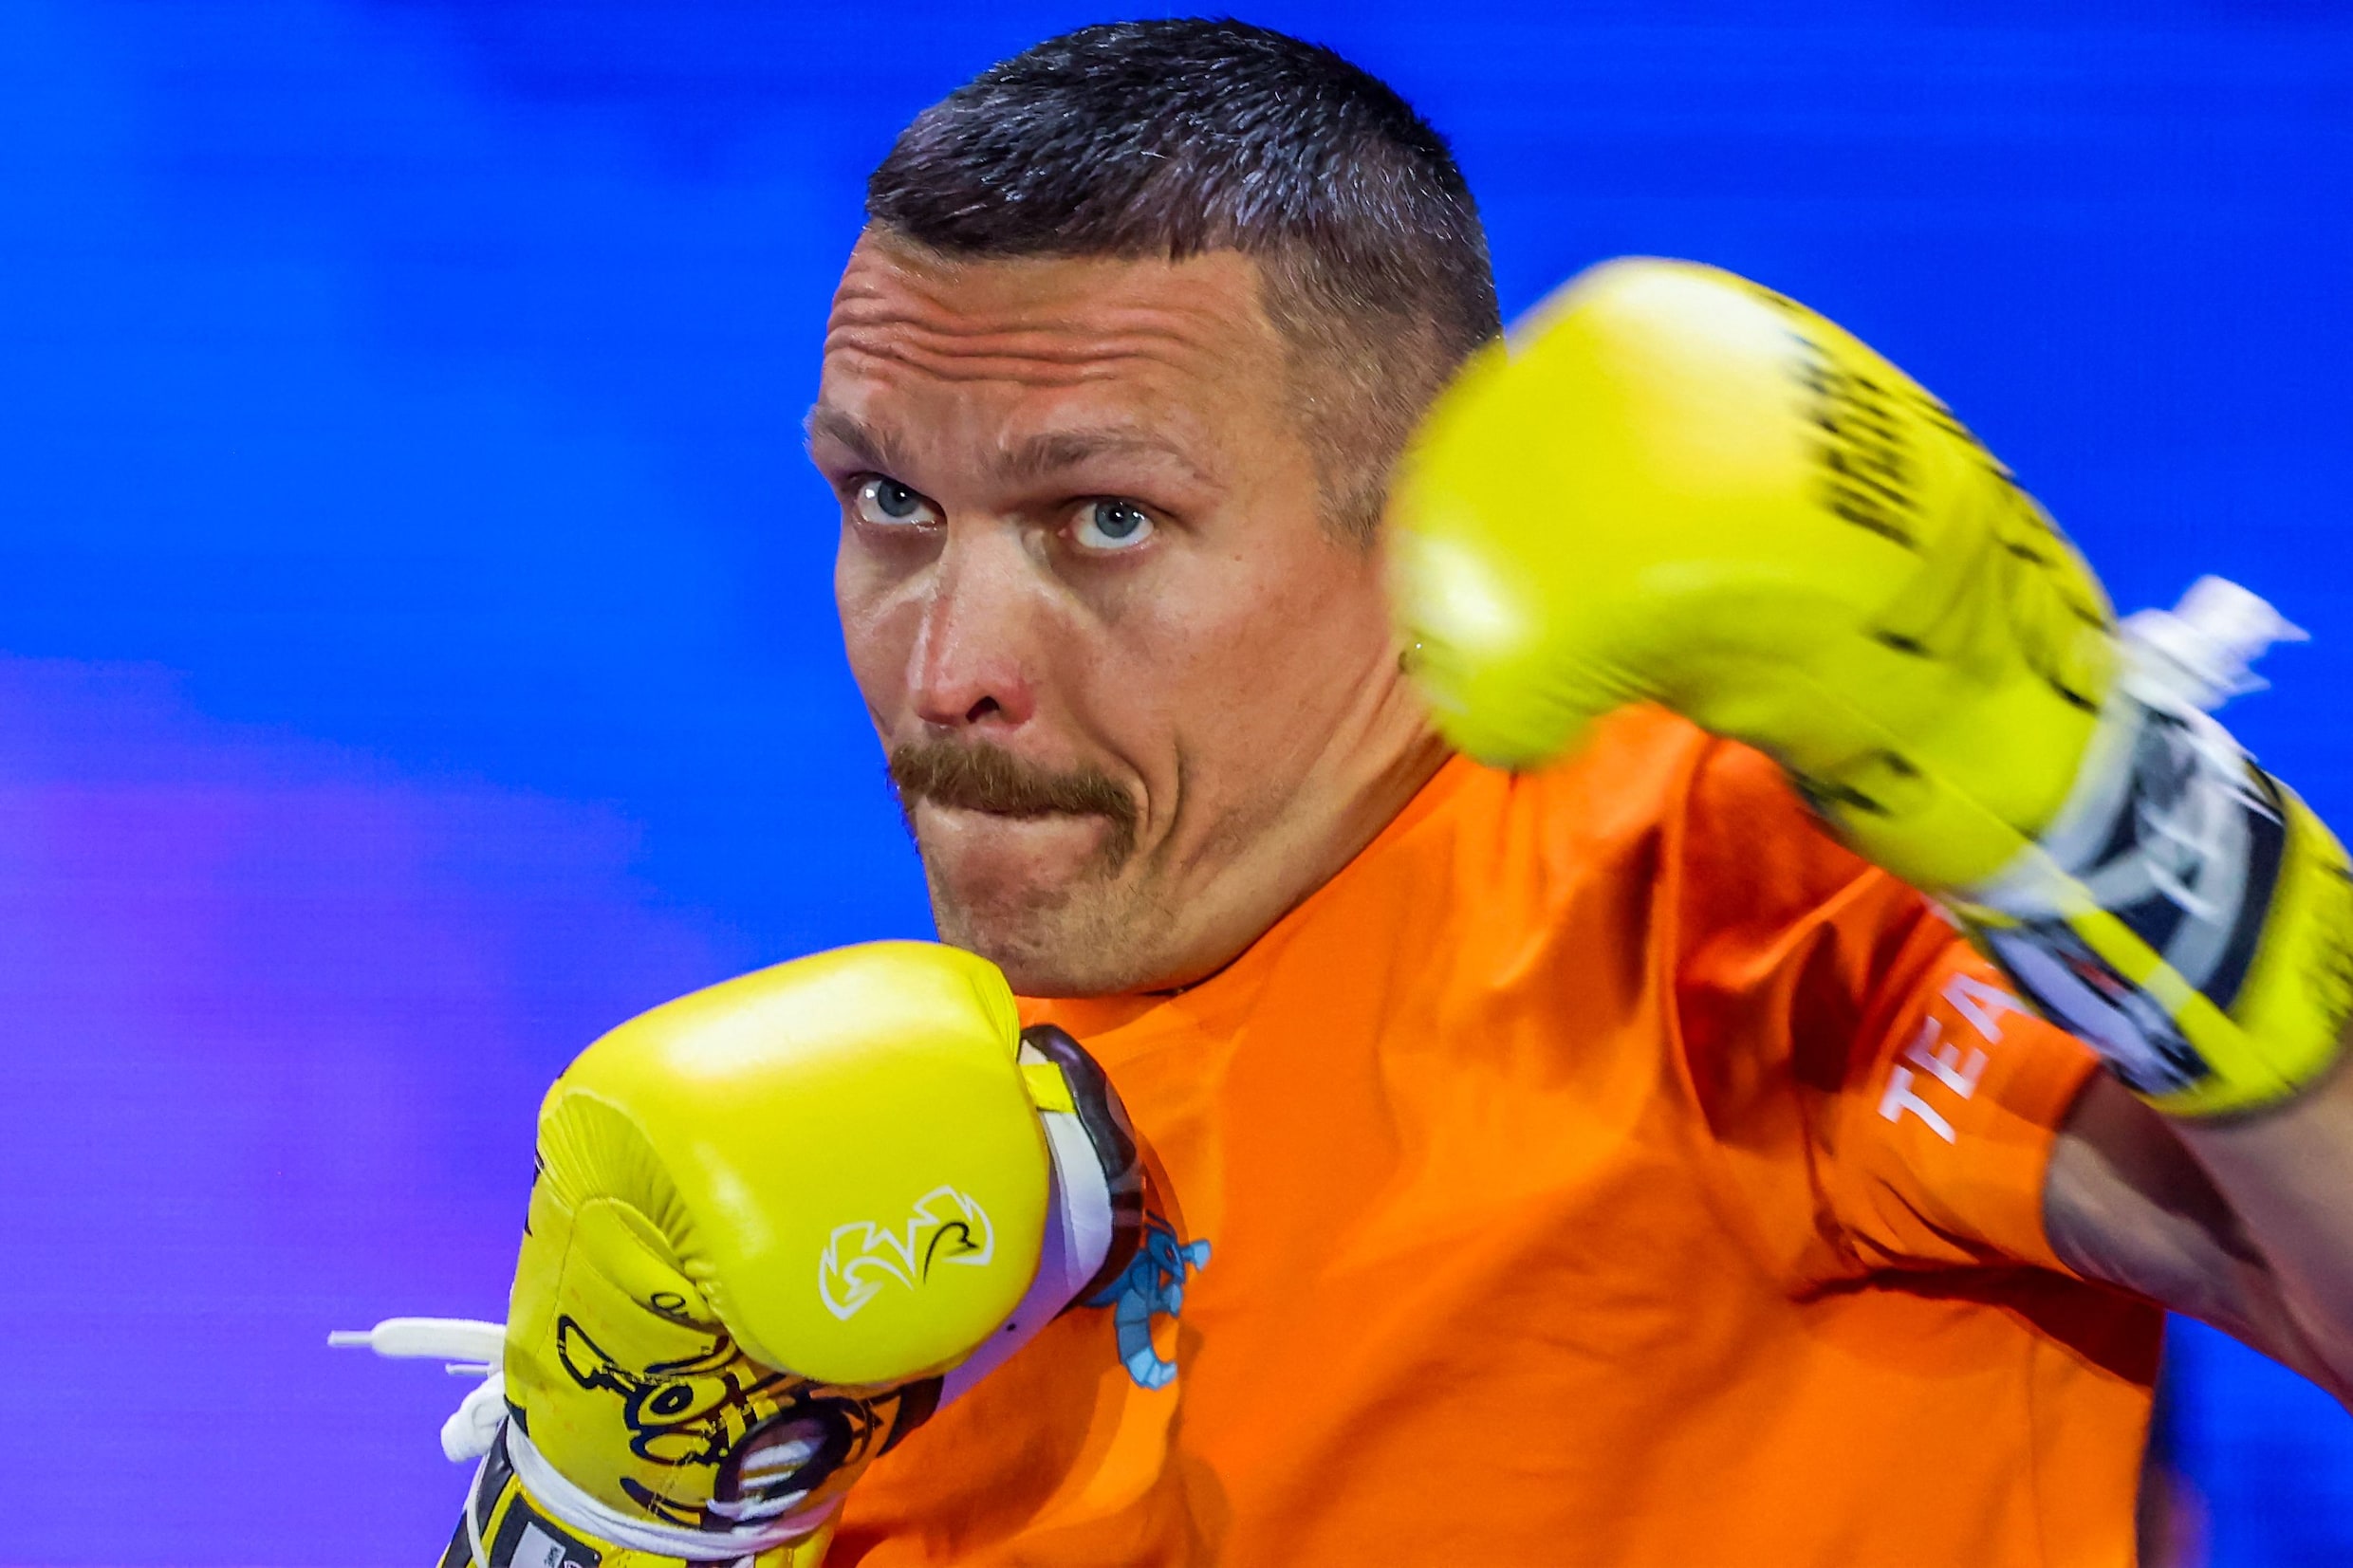 Oekraïner Oleksandr Usyk van het front naar de onbetwiste wereldkampioen boksen